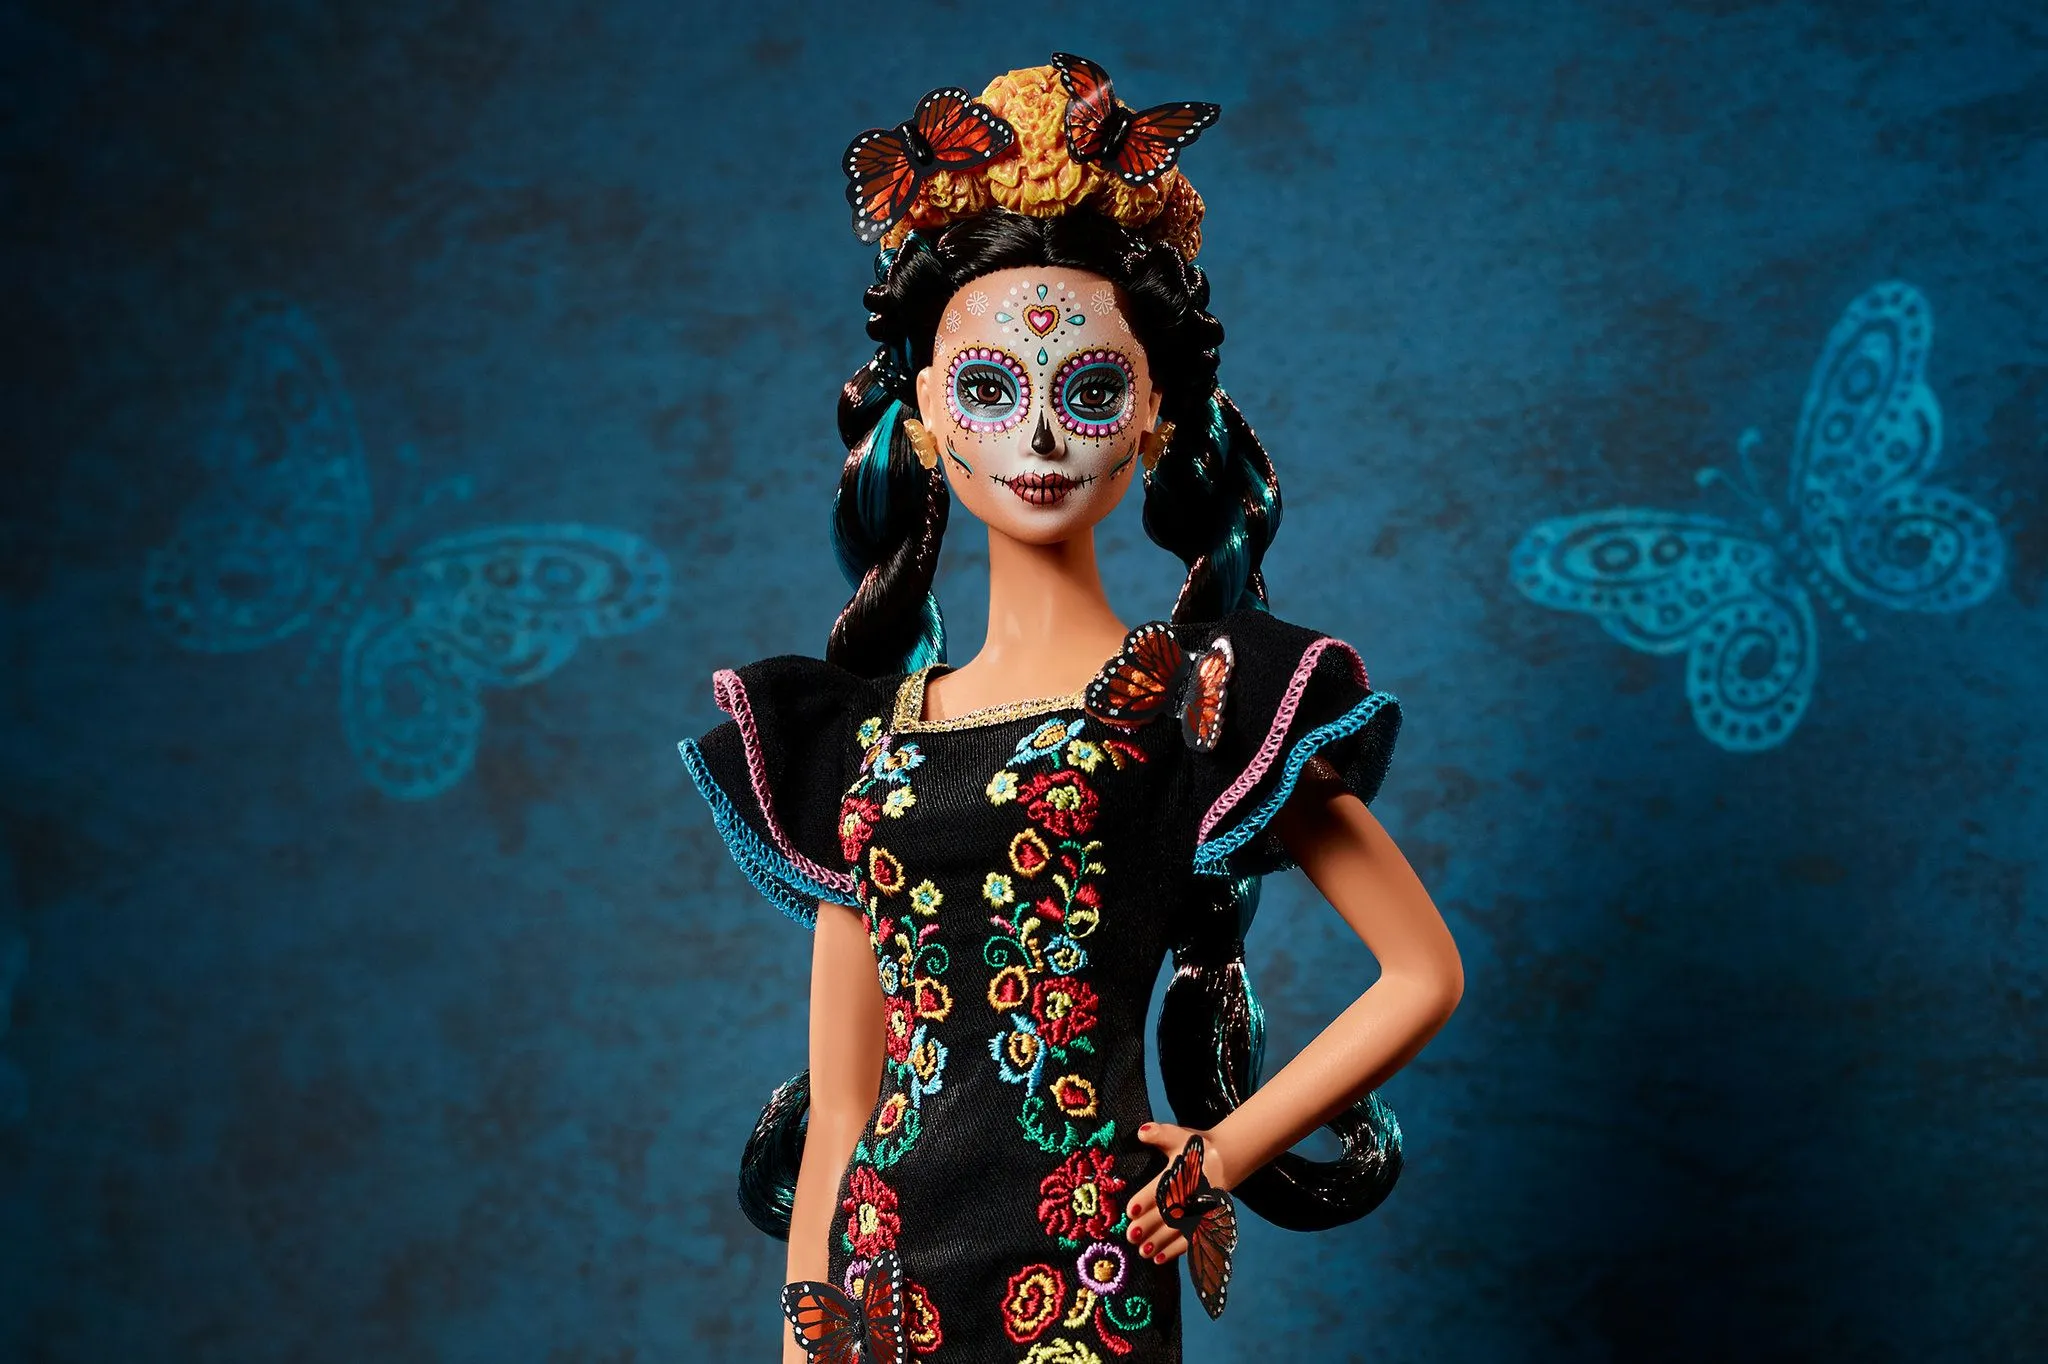 La Barbie de Día de Muertos: celebrada y criticada - The New York Times